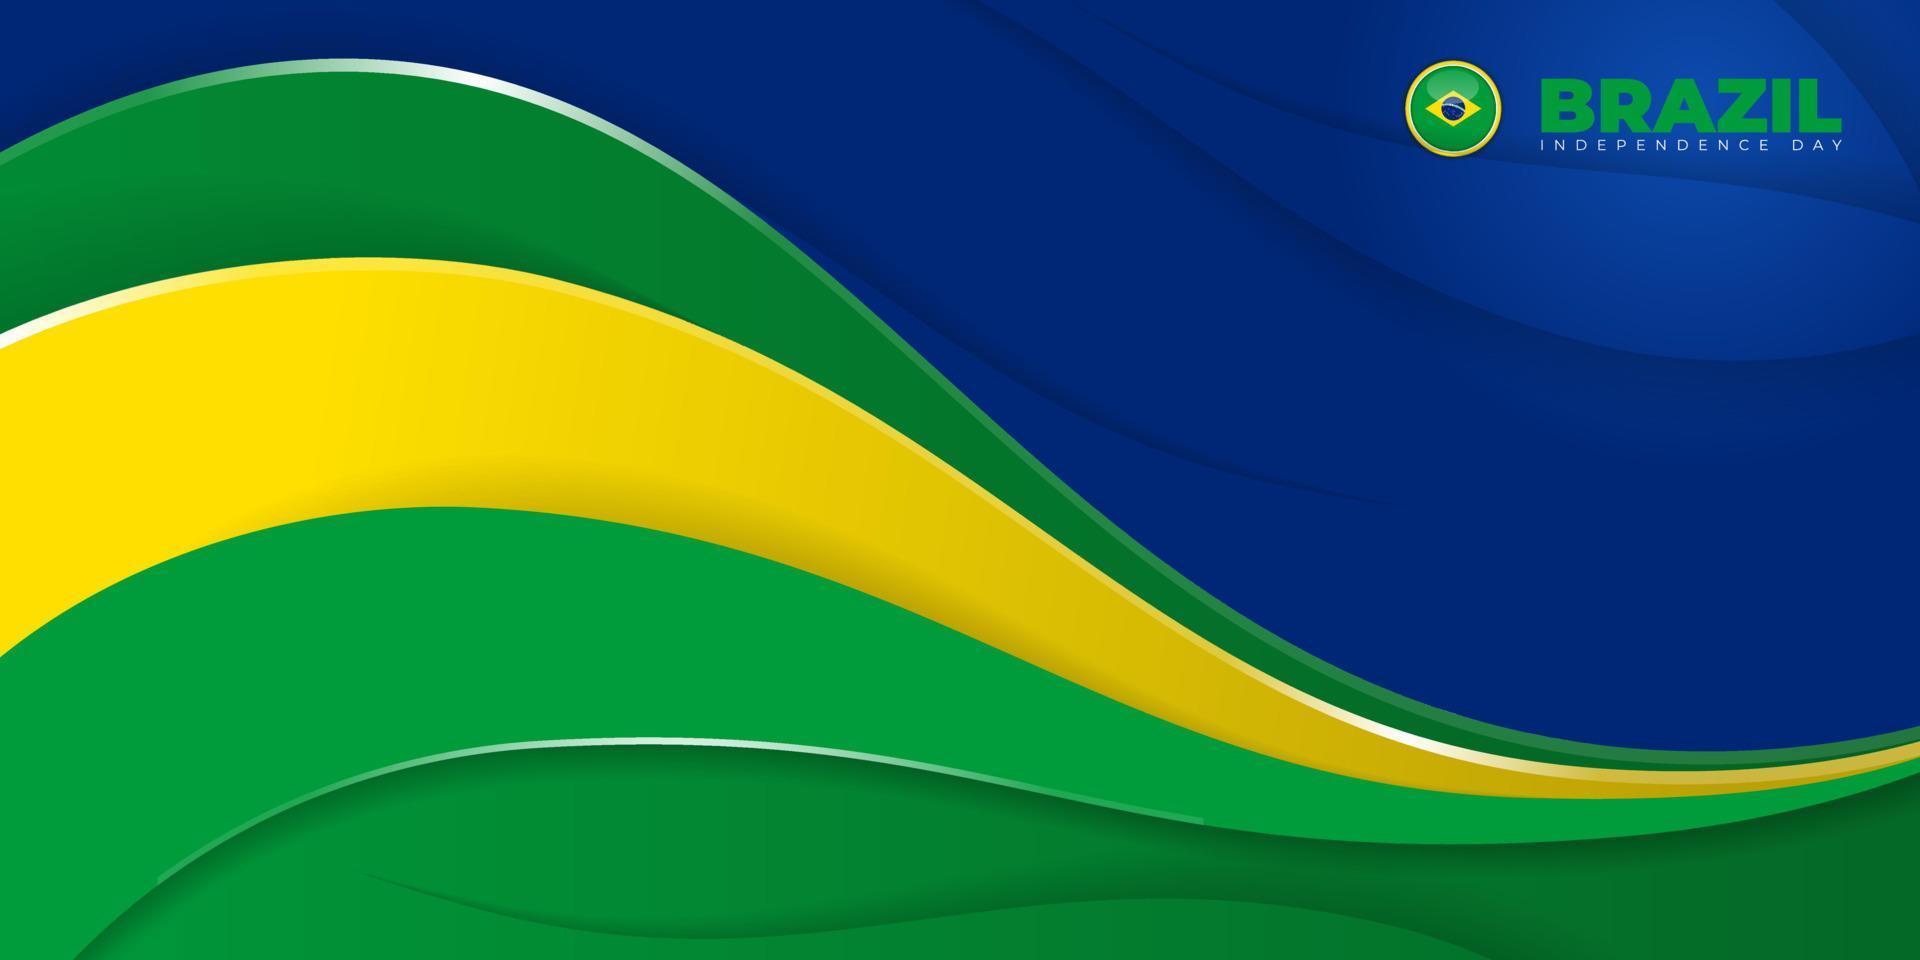 blauer, grüner und gelber abstrakter Hintergrund für Brasilien-Unabhängigkeitstag-Schablonendesign vektor